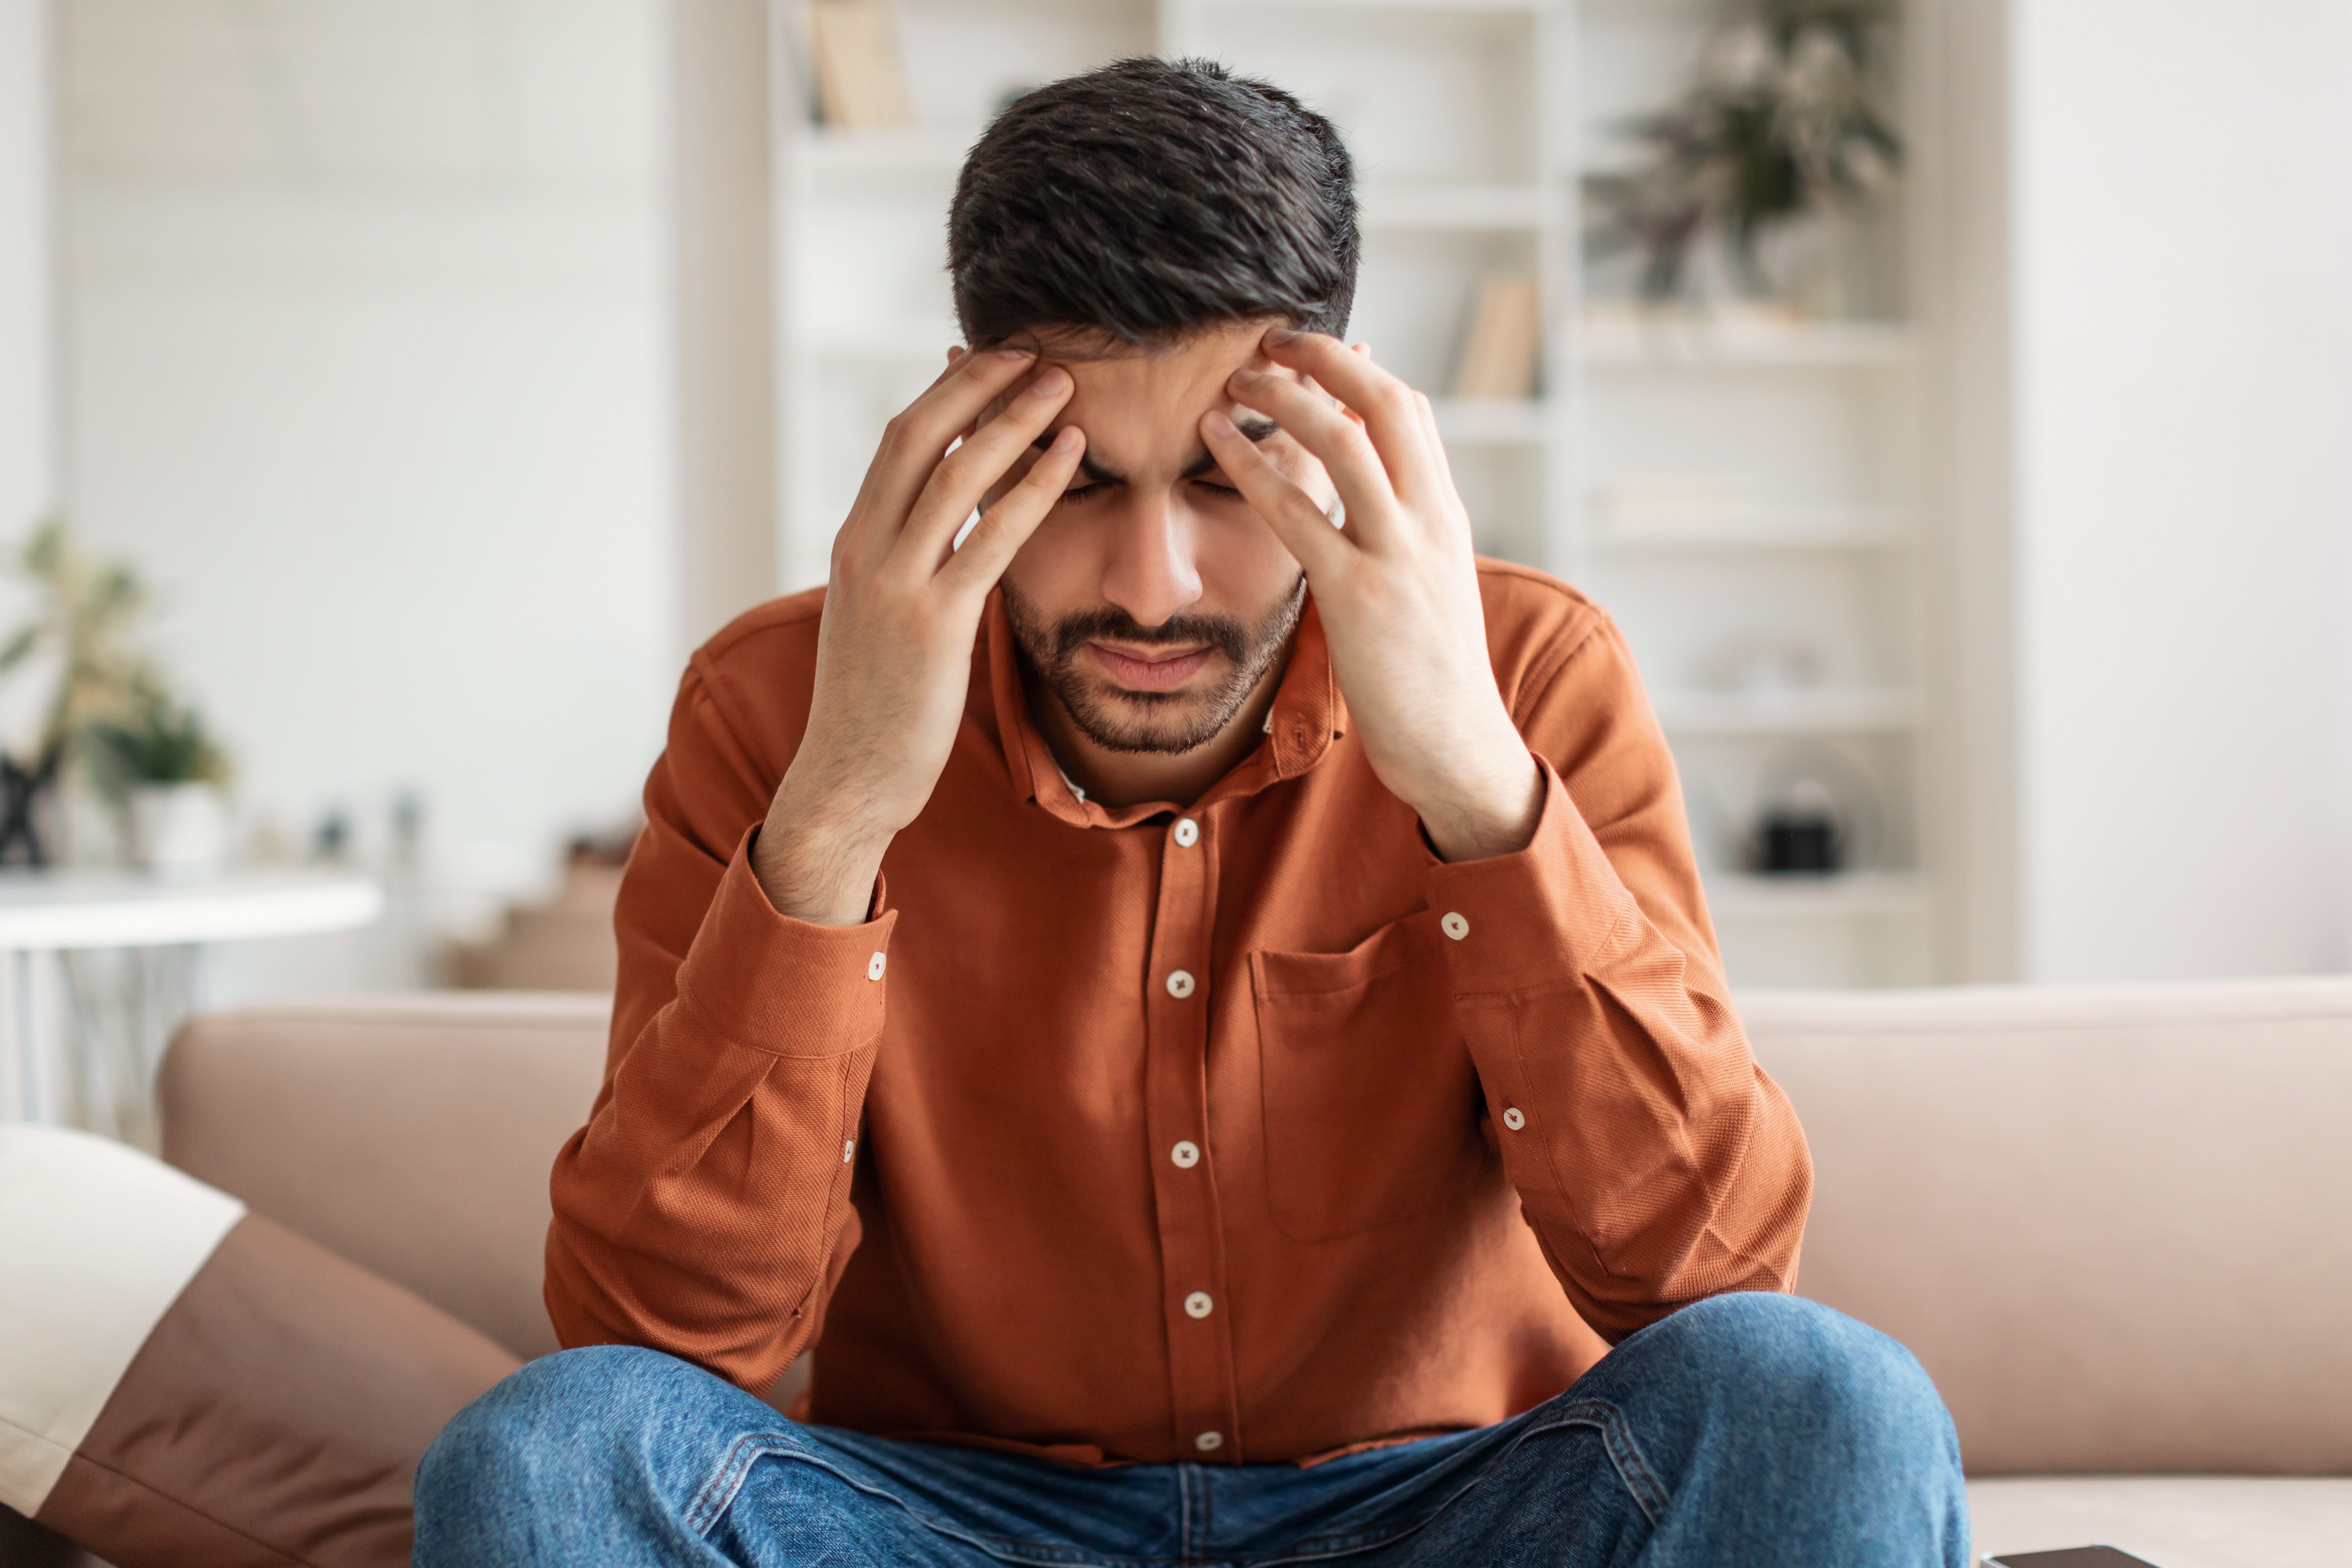 Homme stressé qui réfléchit | Source : Shutterstock